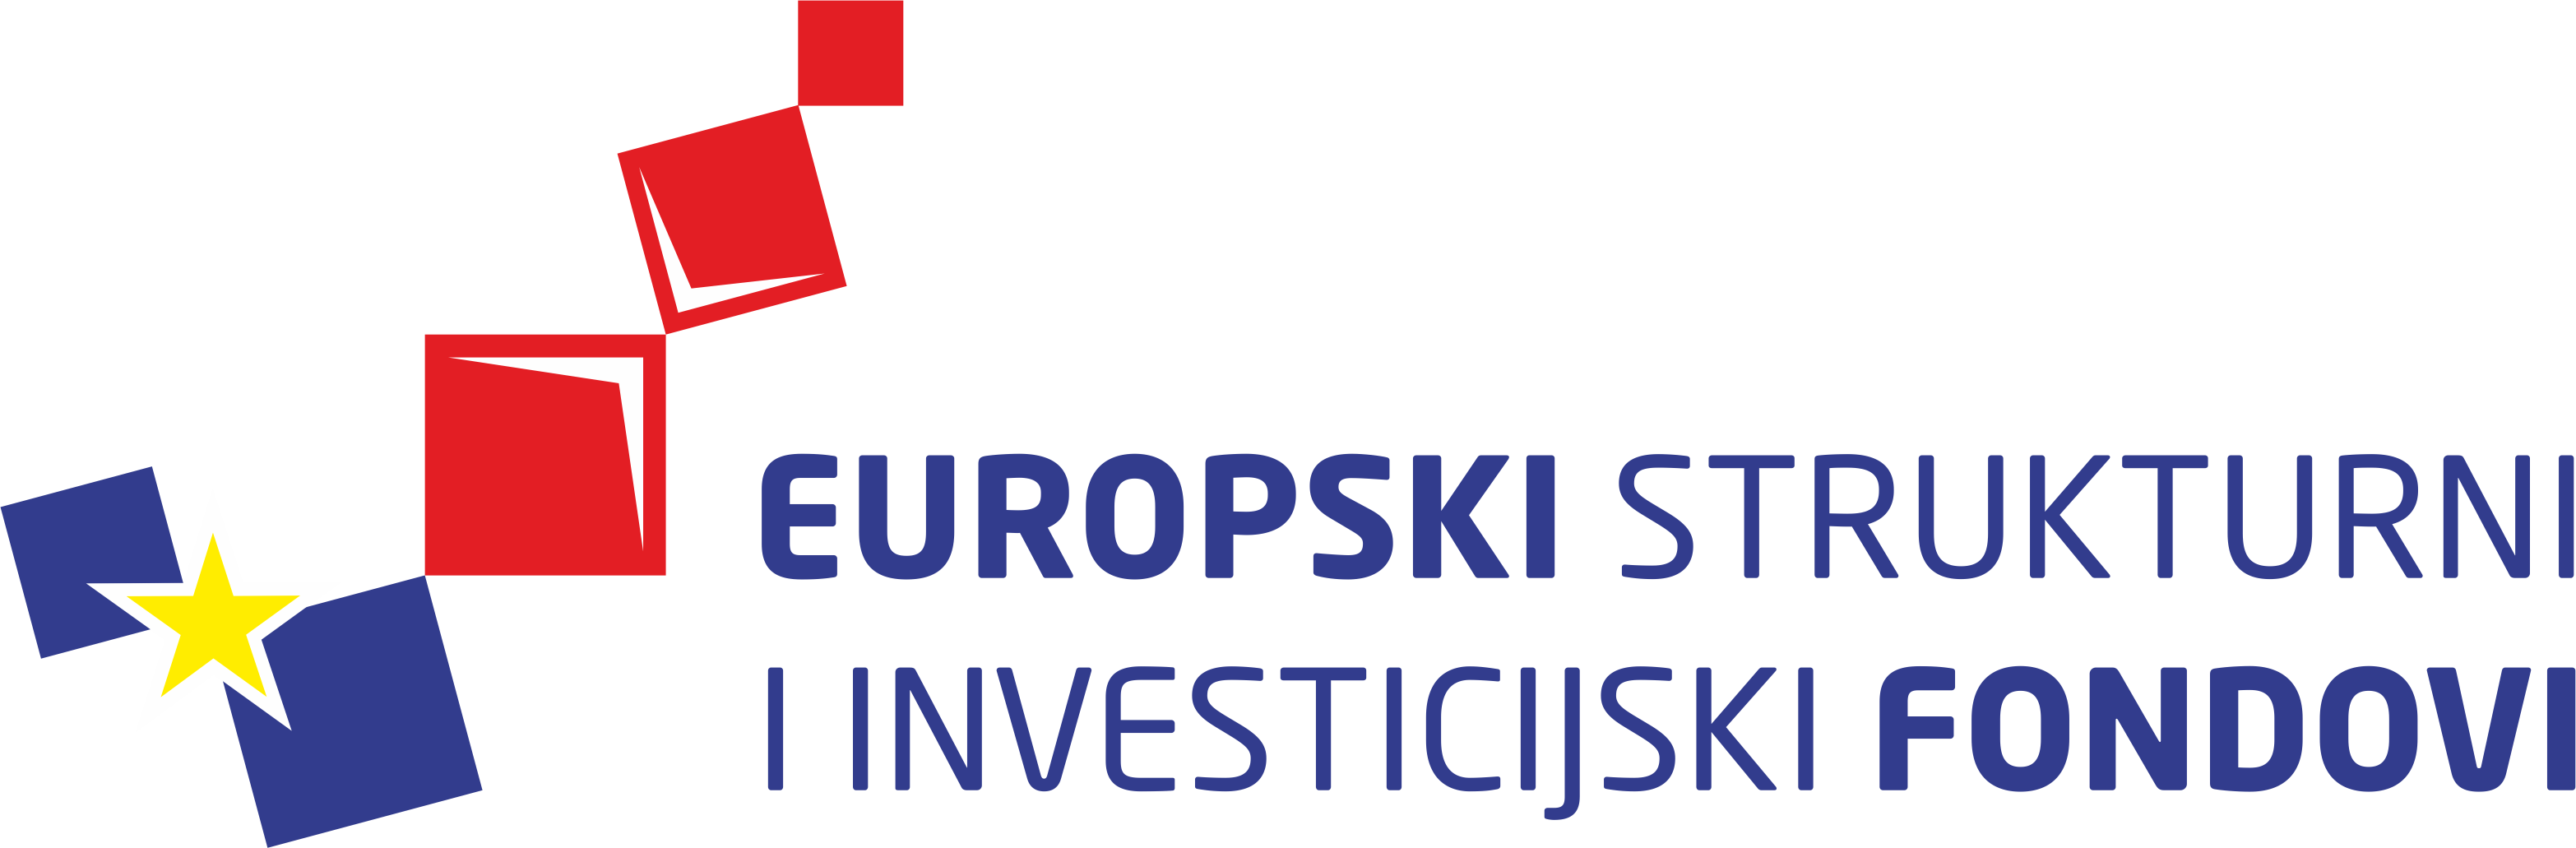 Logotip Europski strukturni i investicijski fondovi